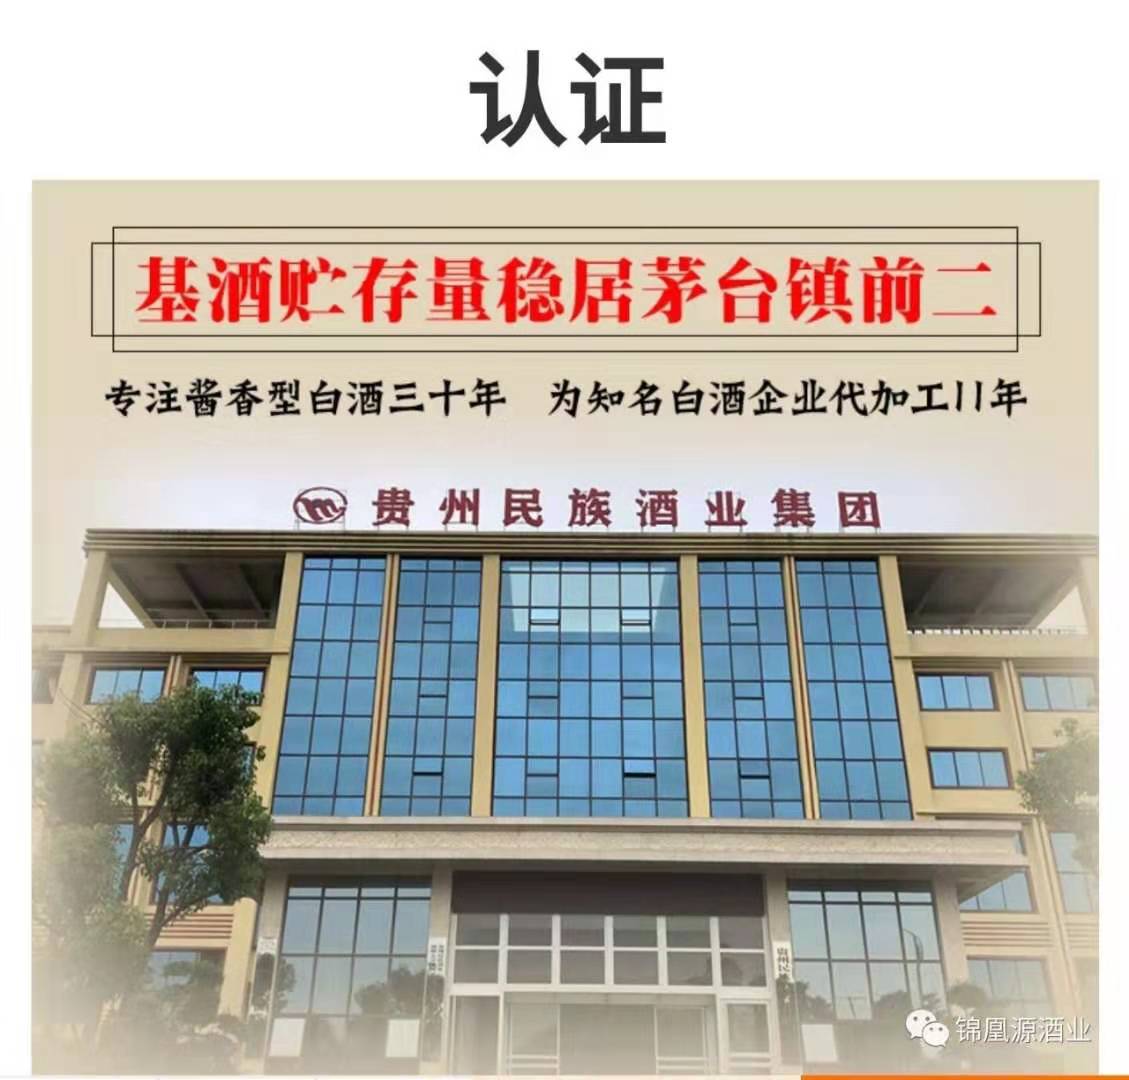 锦凰源酒业环球中心运营中心正式开业